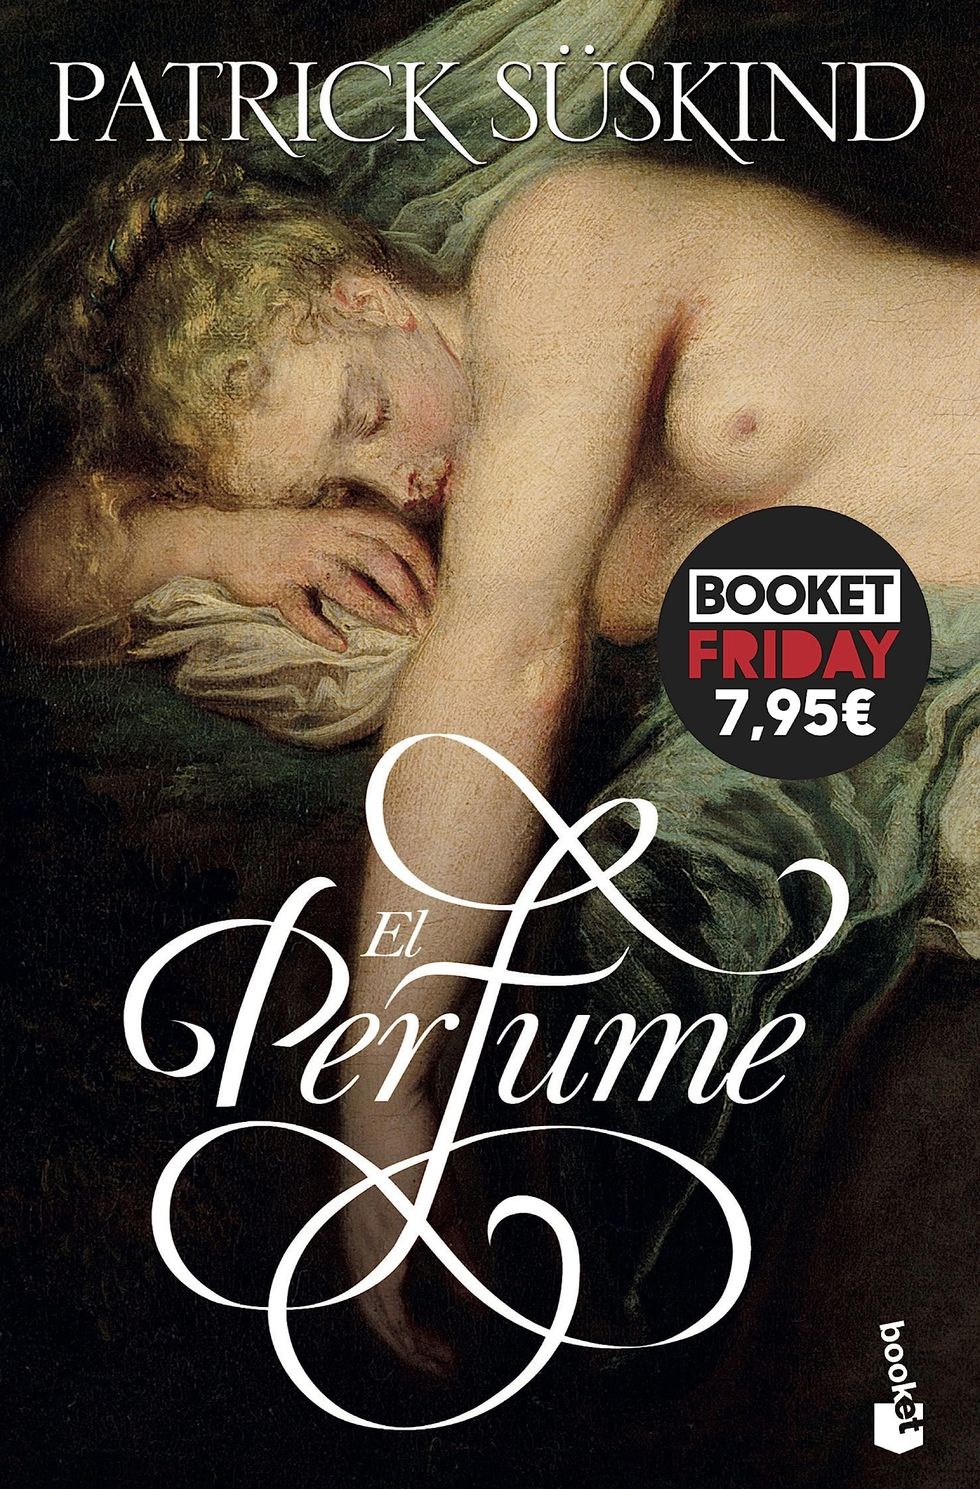 'El perfume'